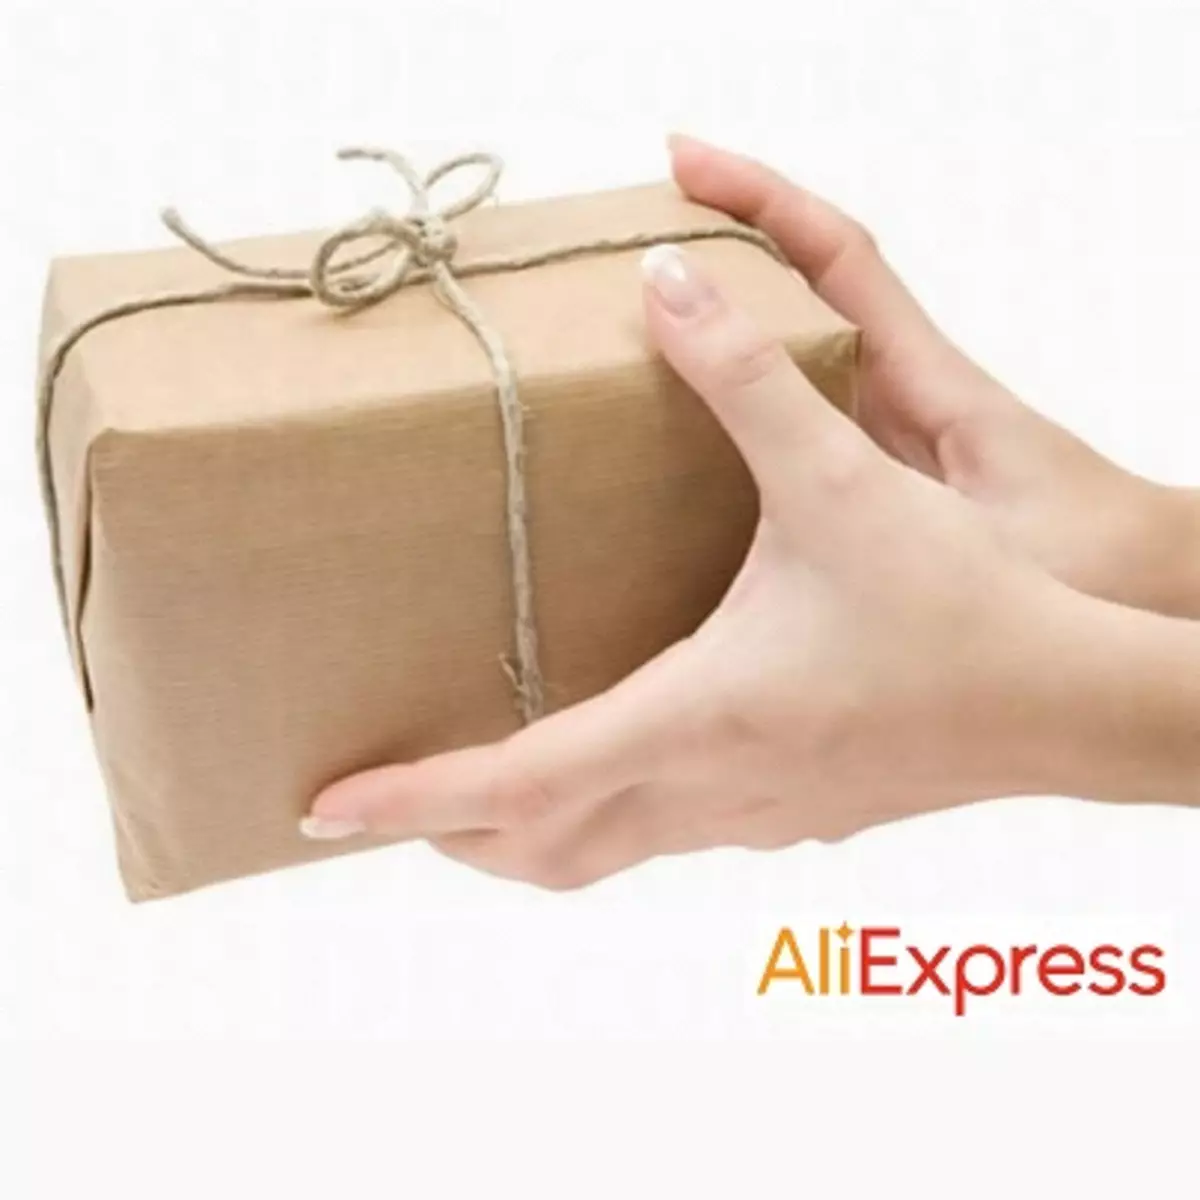 ວິທີການໄດ້ຮັບ parcel ກັບ aliexpress